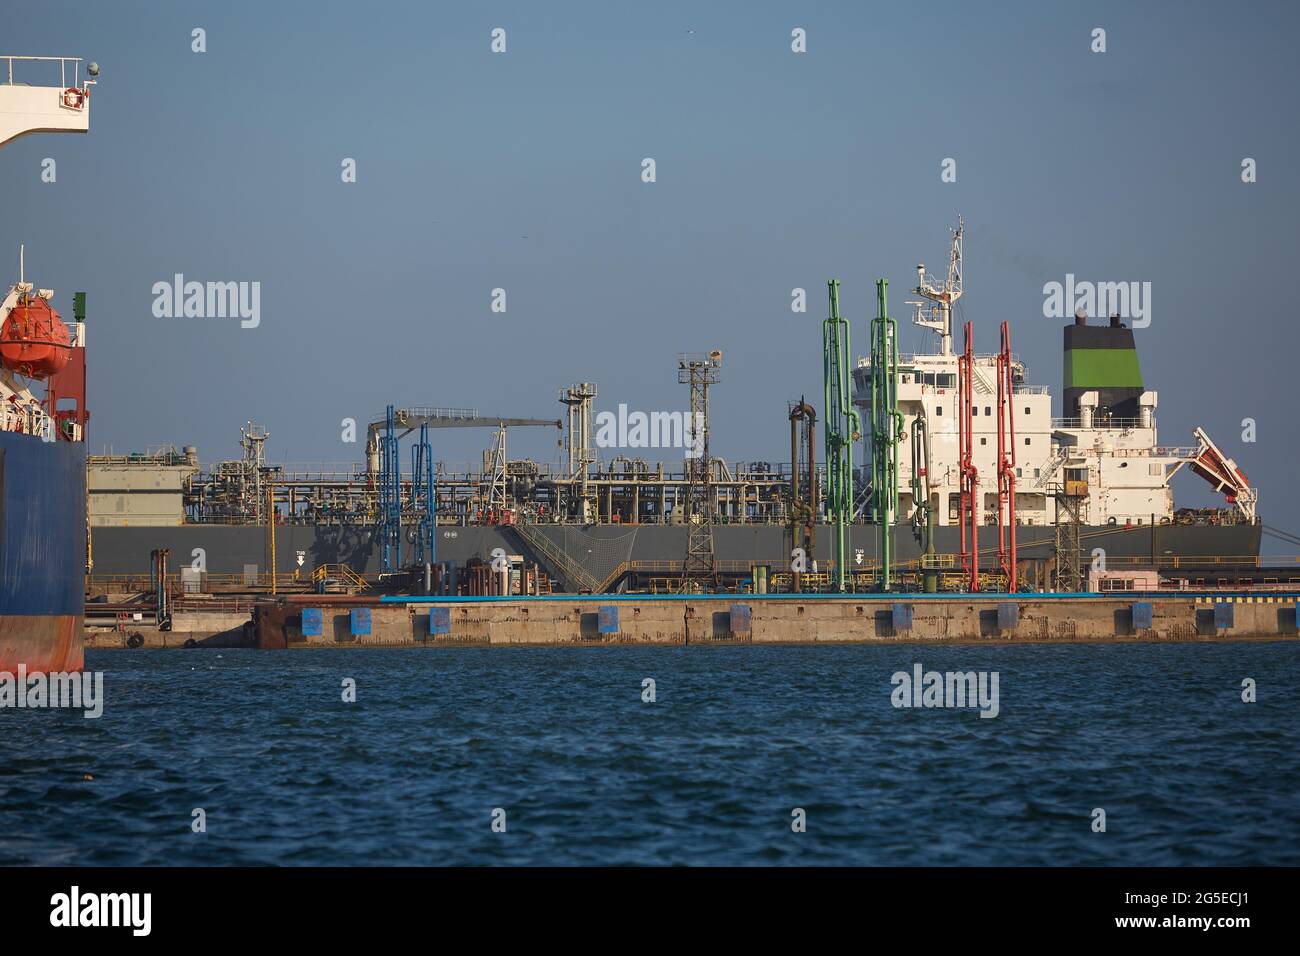 la nave mercantile è un vettore di gas al terminale portuale. La petroliera al terminale del porto industriale carica con gas, scarica il gas. Foto Stock